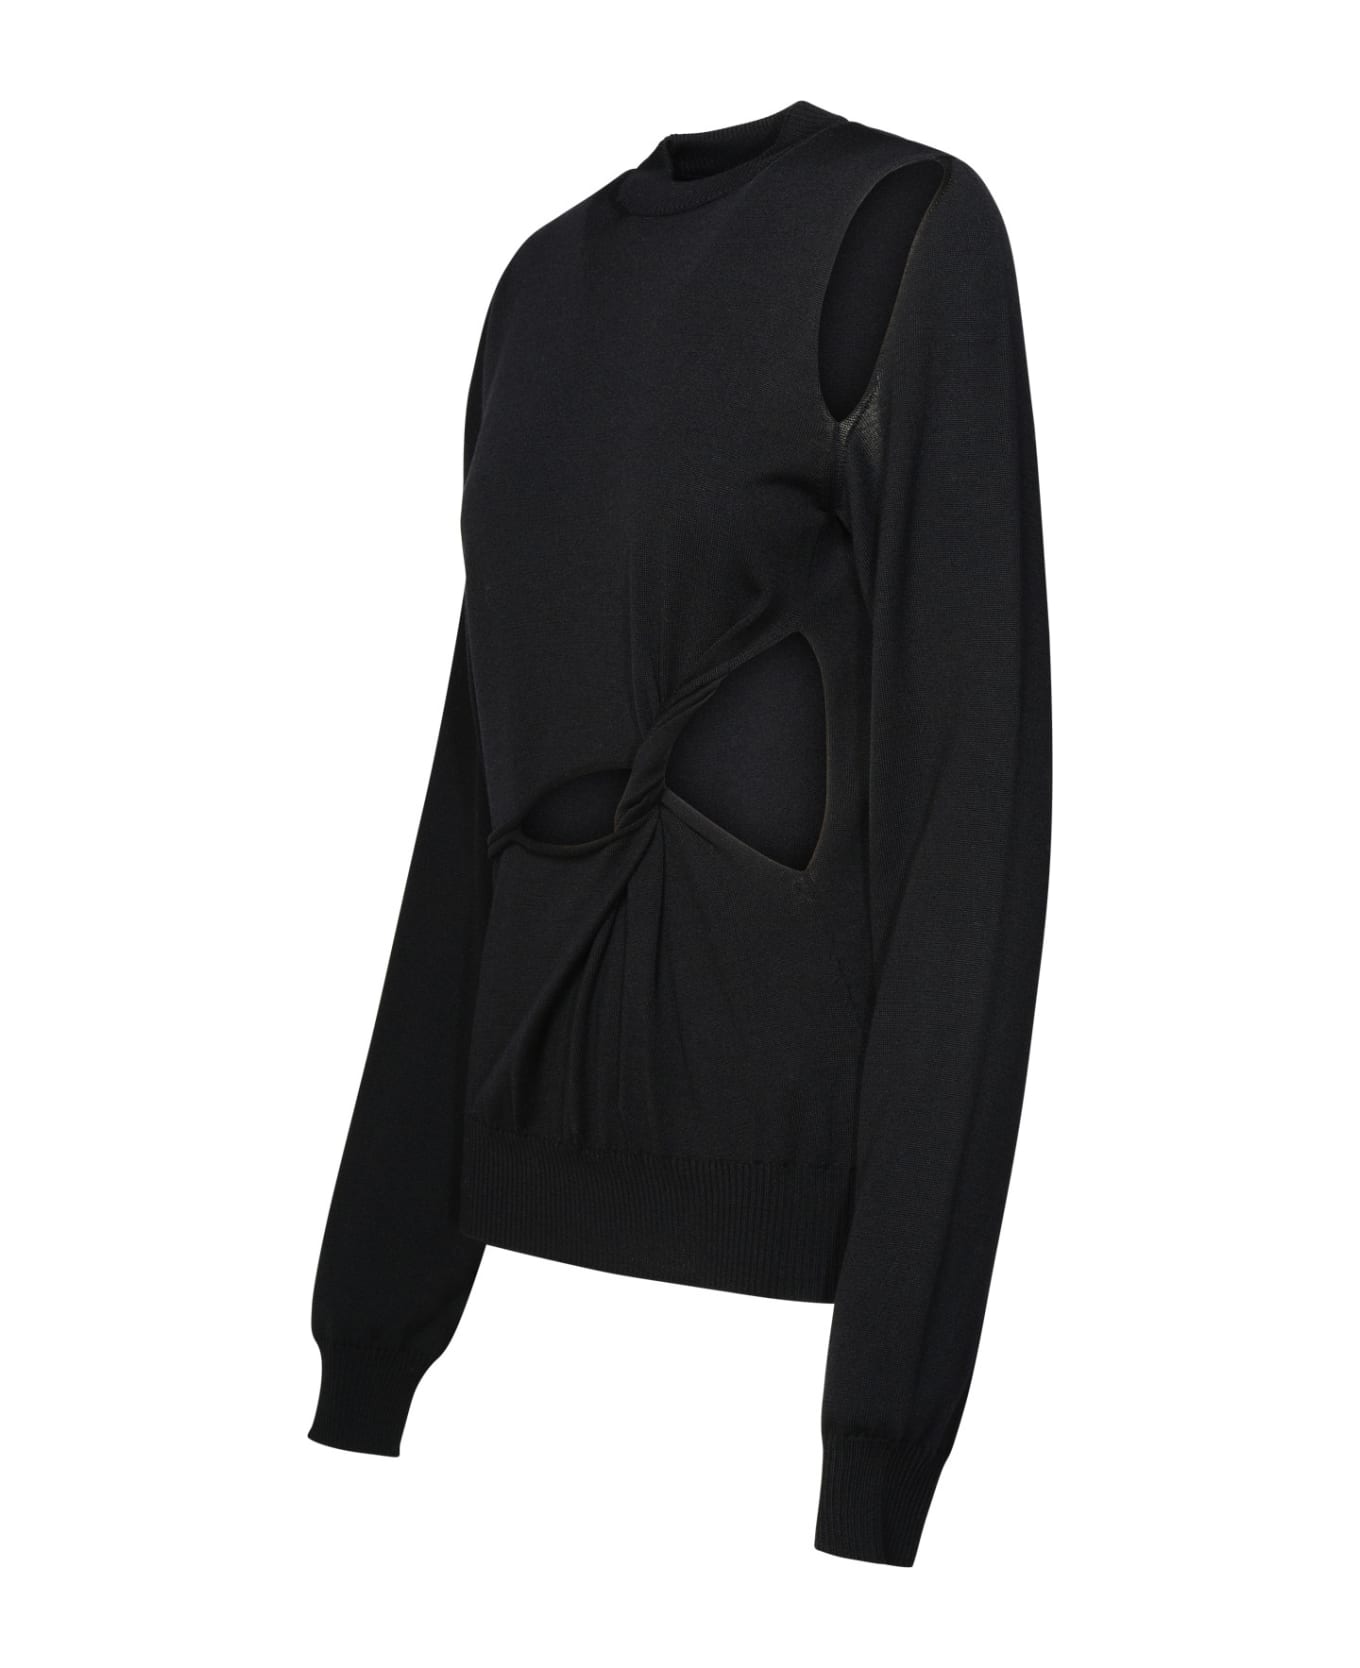 SportMax Black Virgin Wool Sweater - Black